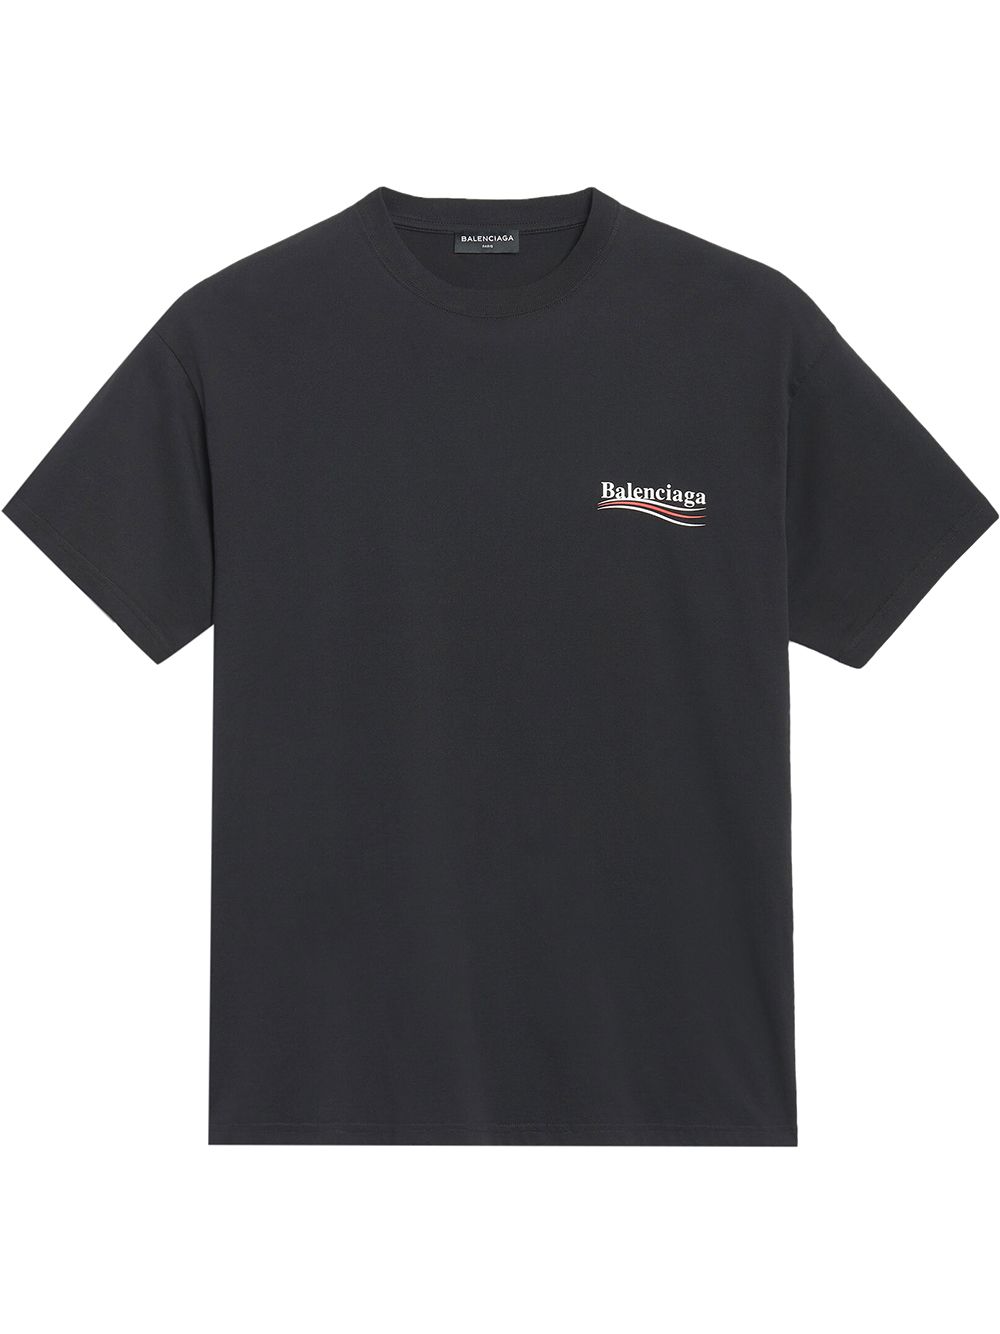 Balenciaga oversize logo T-shirt - Black